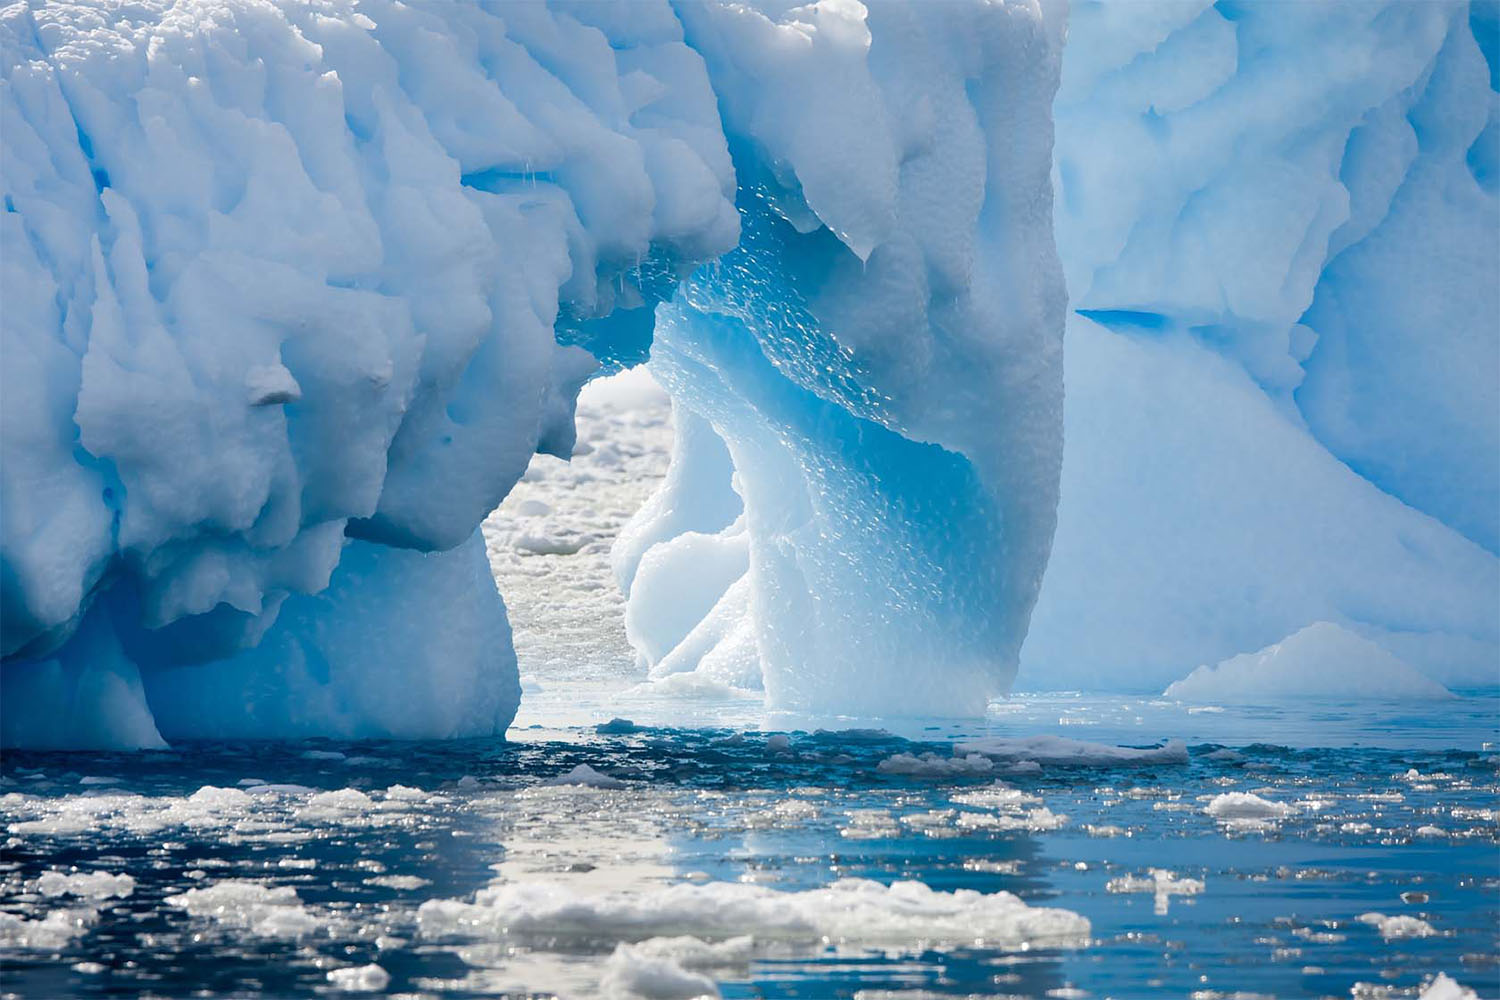 de smeltende ijskap ter illustratie bij de filosofiecursus 'O moeder wat is het heet' over de klimaataanpak